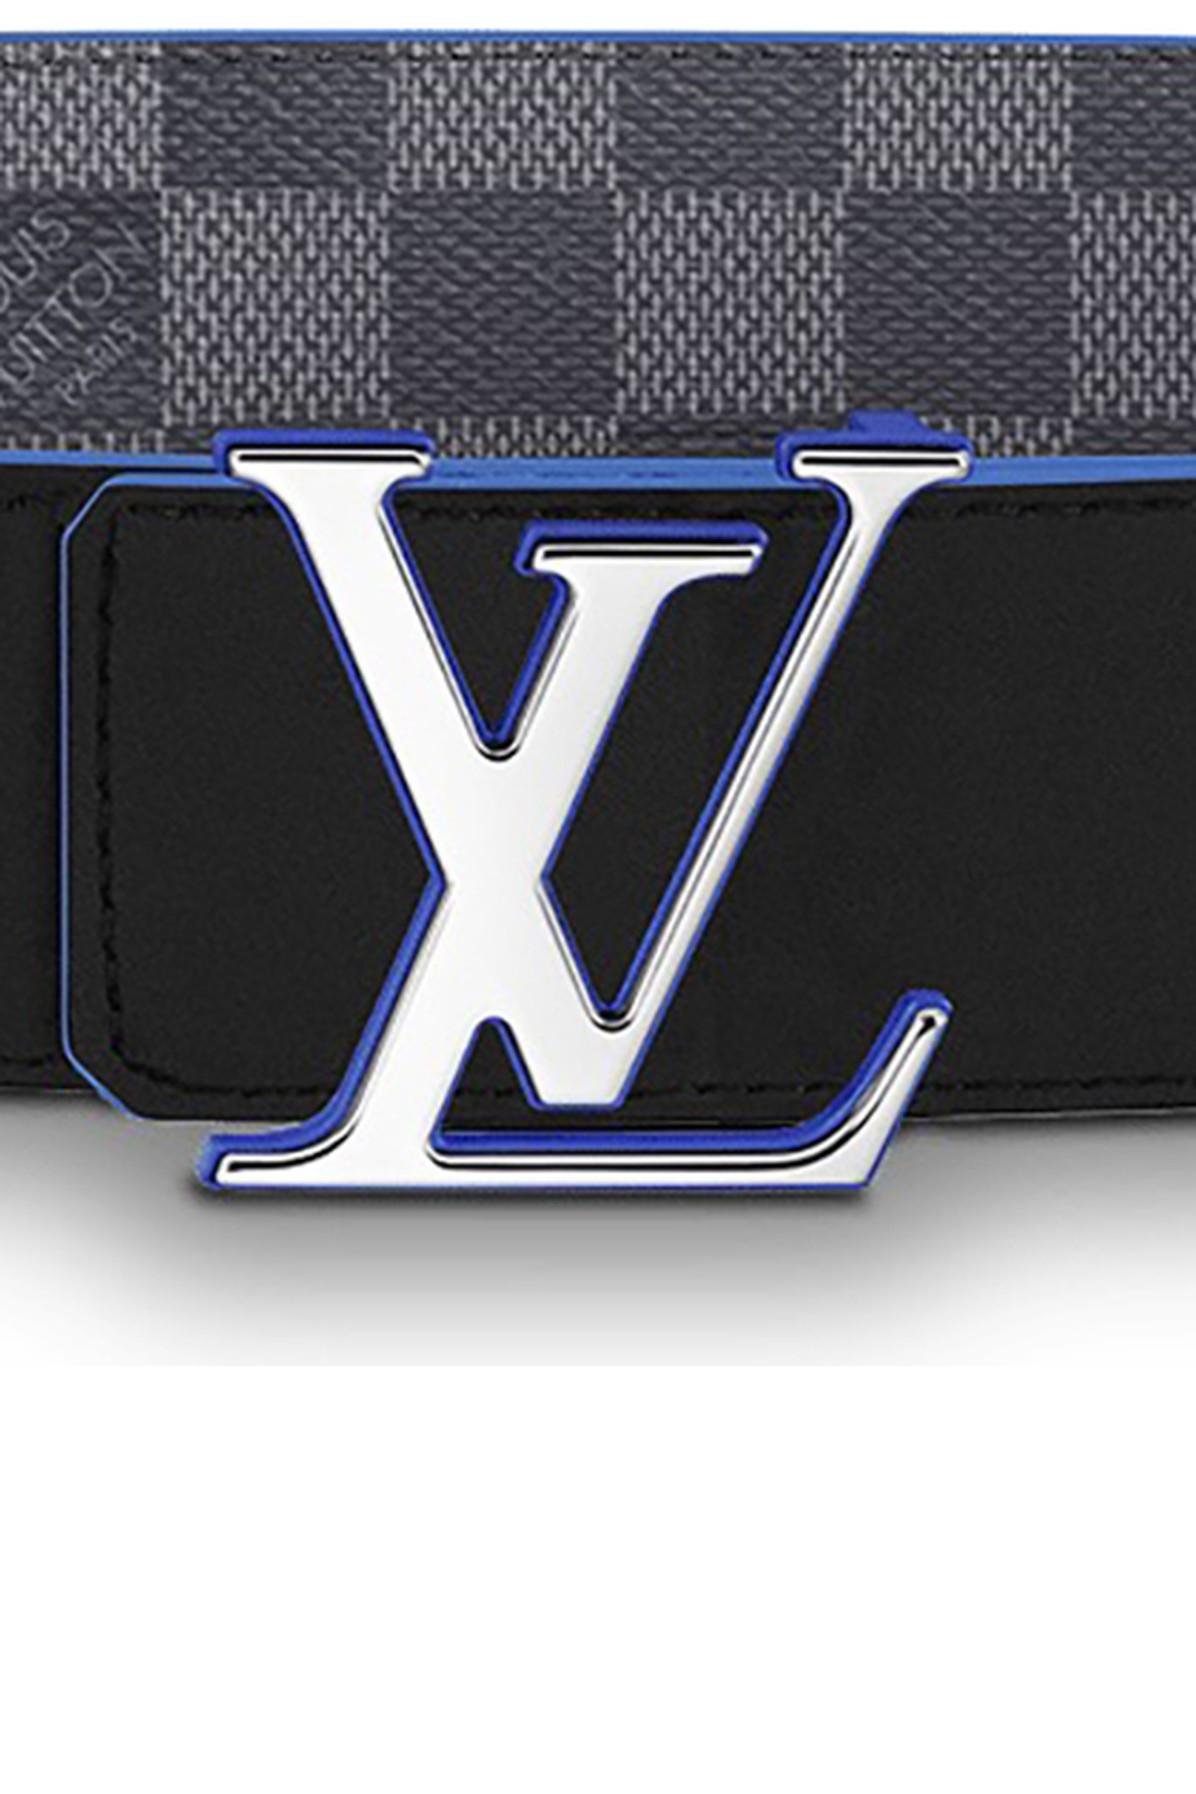 Louis Vuitton Damier Belt - Lv Initiales Belt Leather